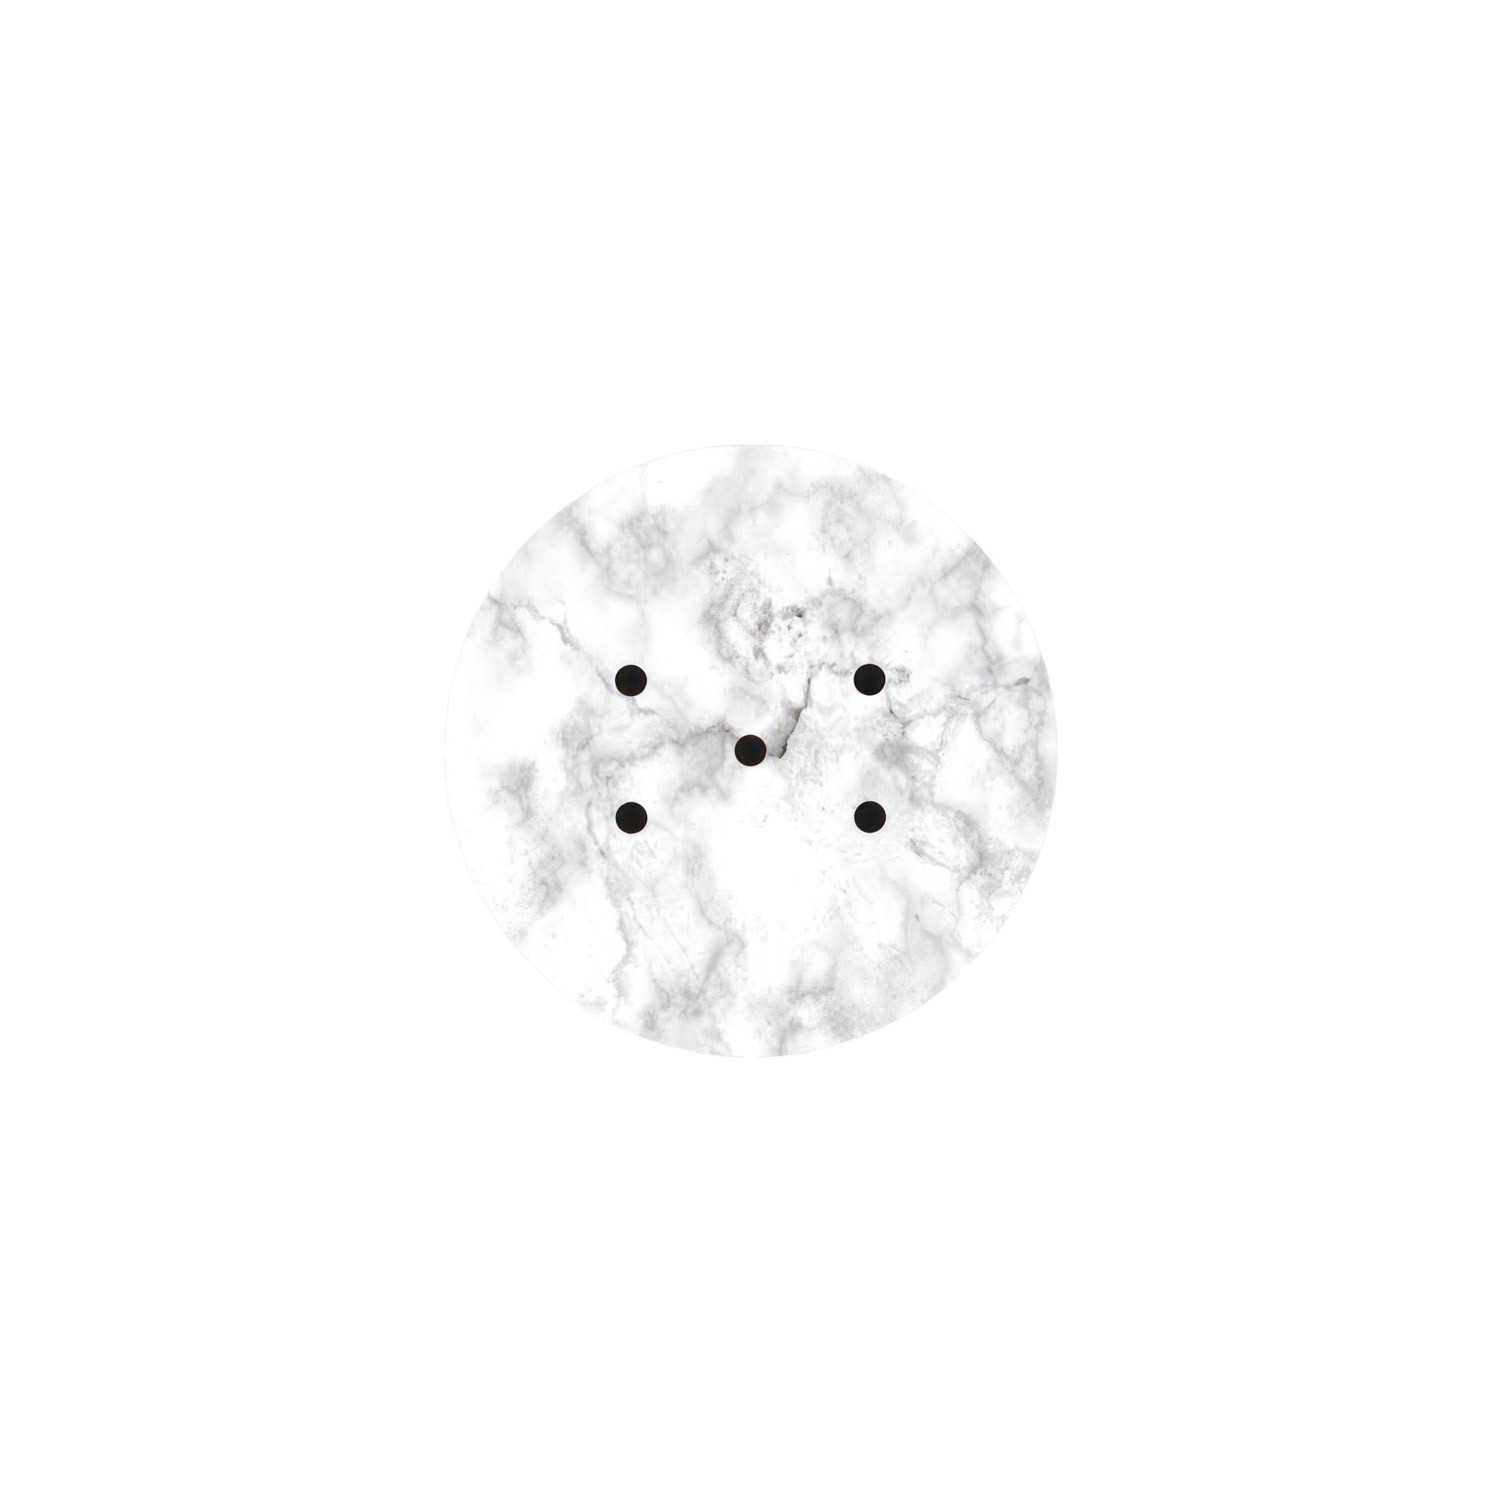 Kit rosetón Rose-One redondo, diámetro 200 mm con 5 agujeros y 4 agujeros laterales